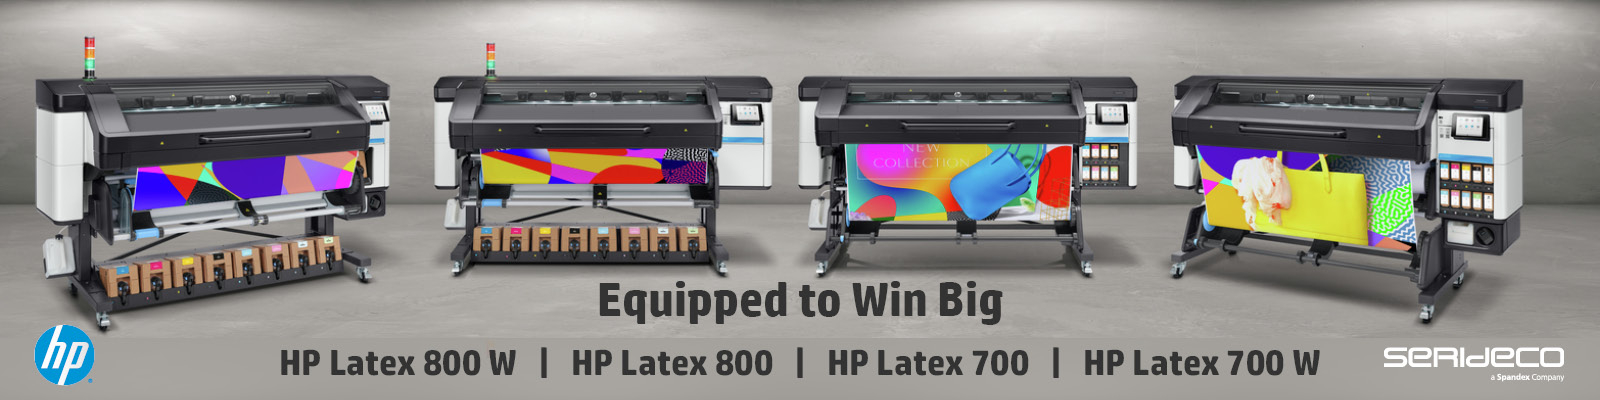 HP Latex 700 ja 800 -sarja monipuoliseen suurkuvatuotantoon